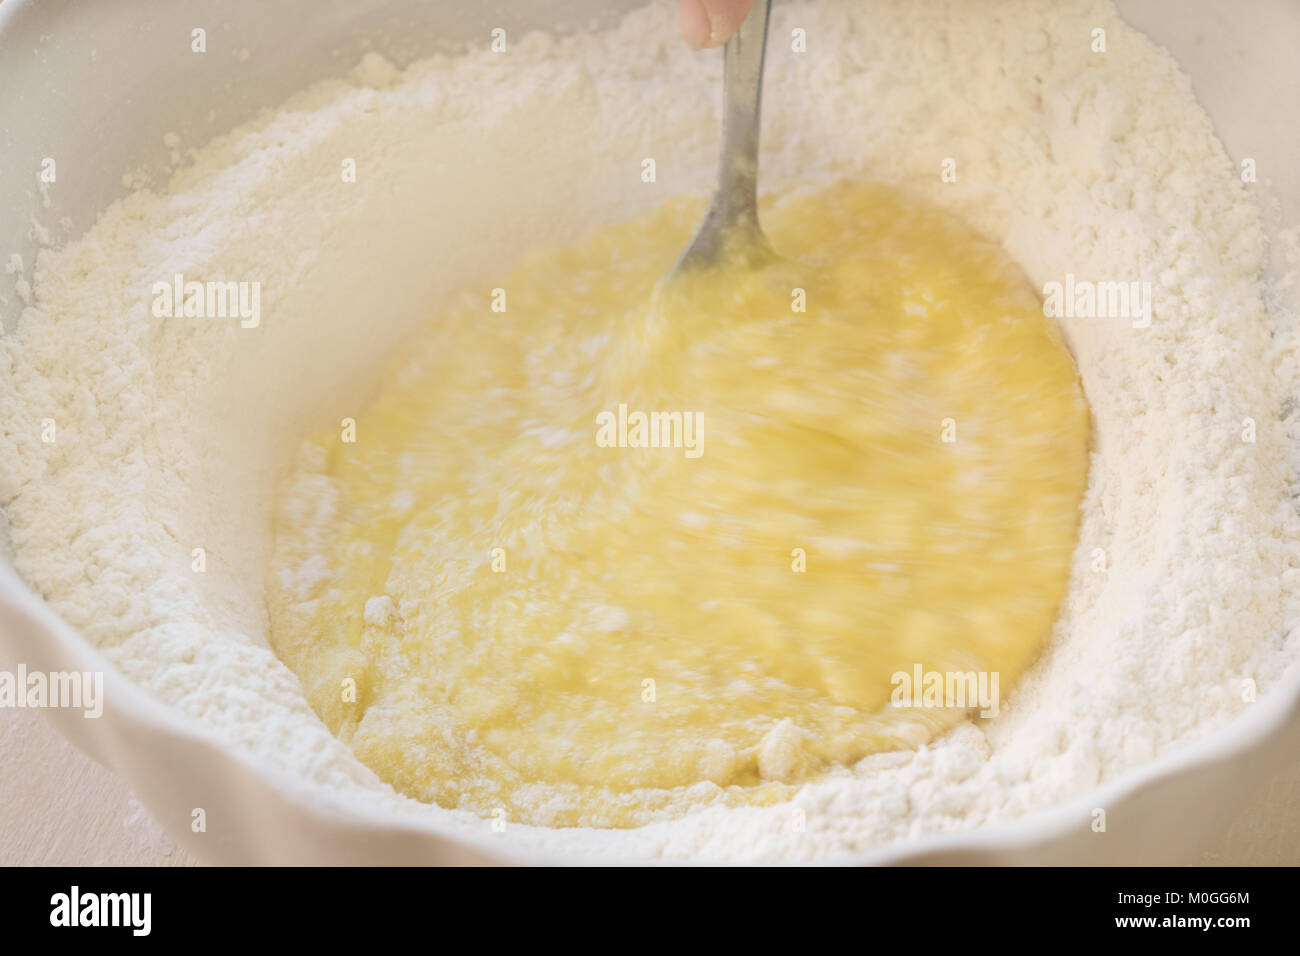 Les oeufs battus et la farine pour préparer une pâte à gâteau Banque D'Images